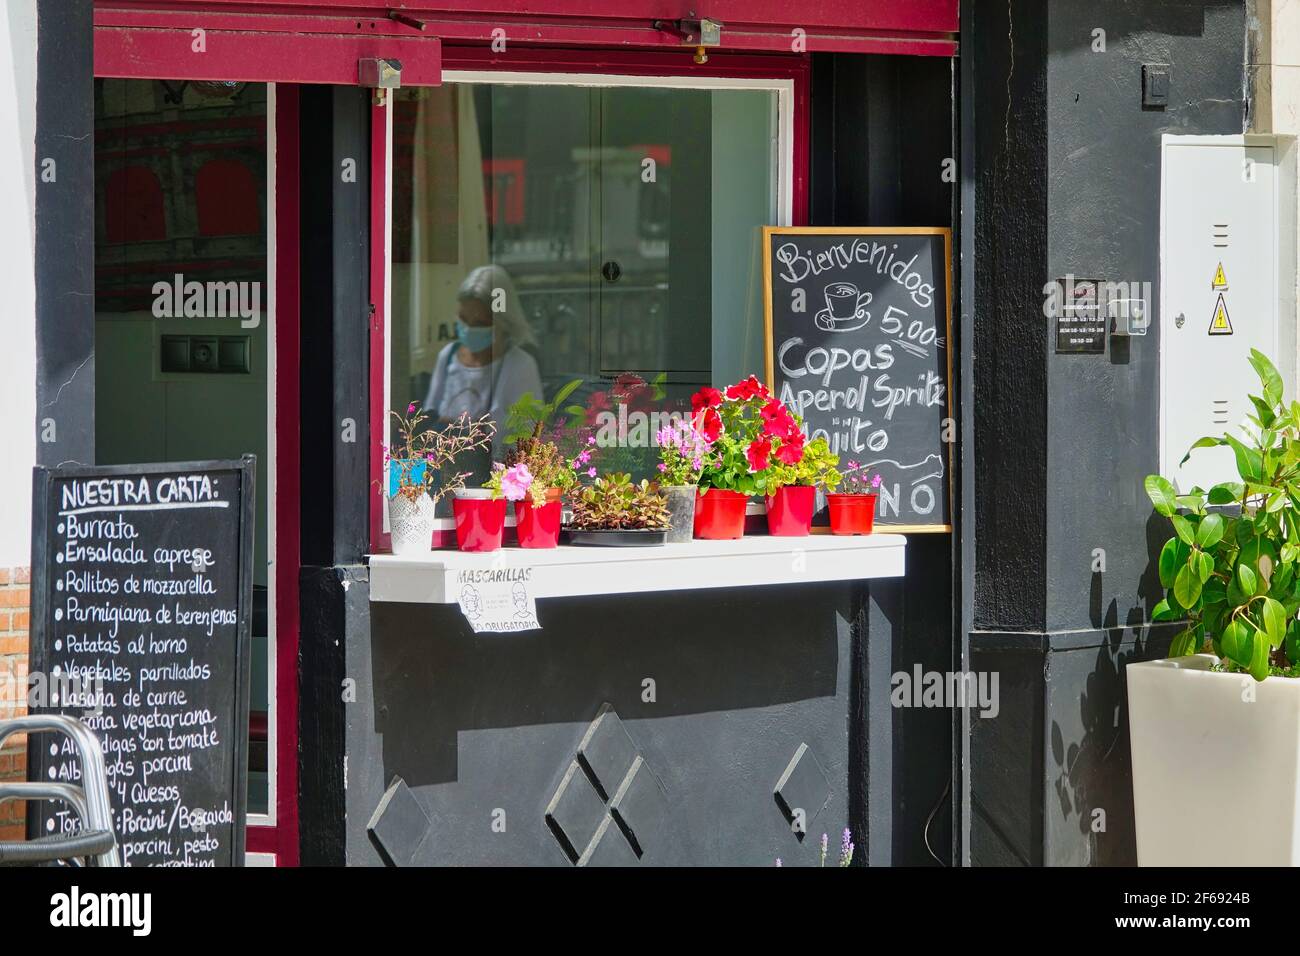 Entrée d'un restaurant de cuisine italienne à Grenade (Espagne) ouverte au public, avec le reflet d'une femme avec un masque dans la fenêtre Banque D'Images